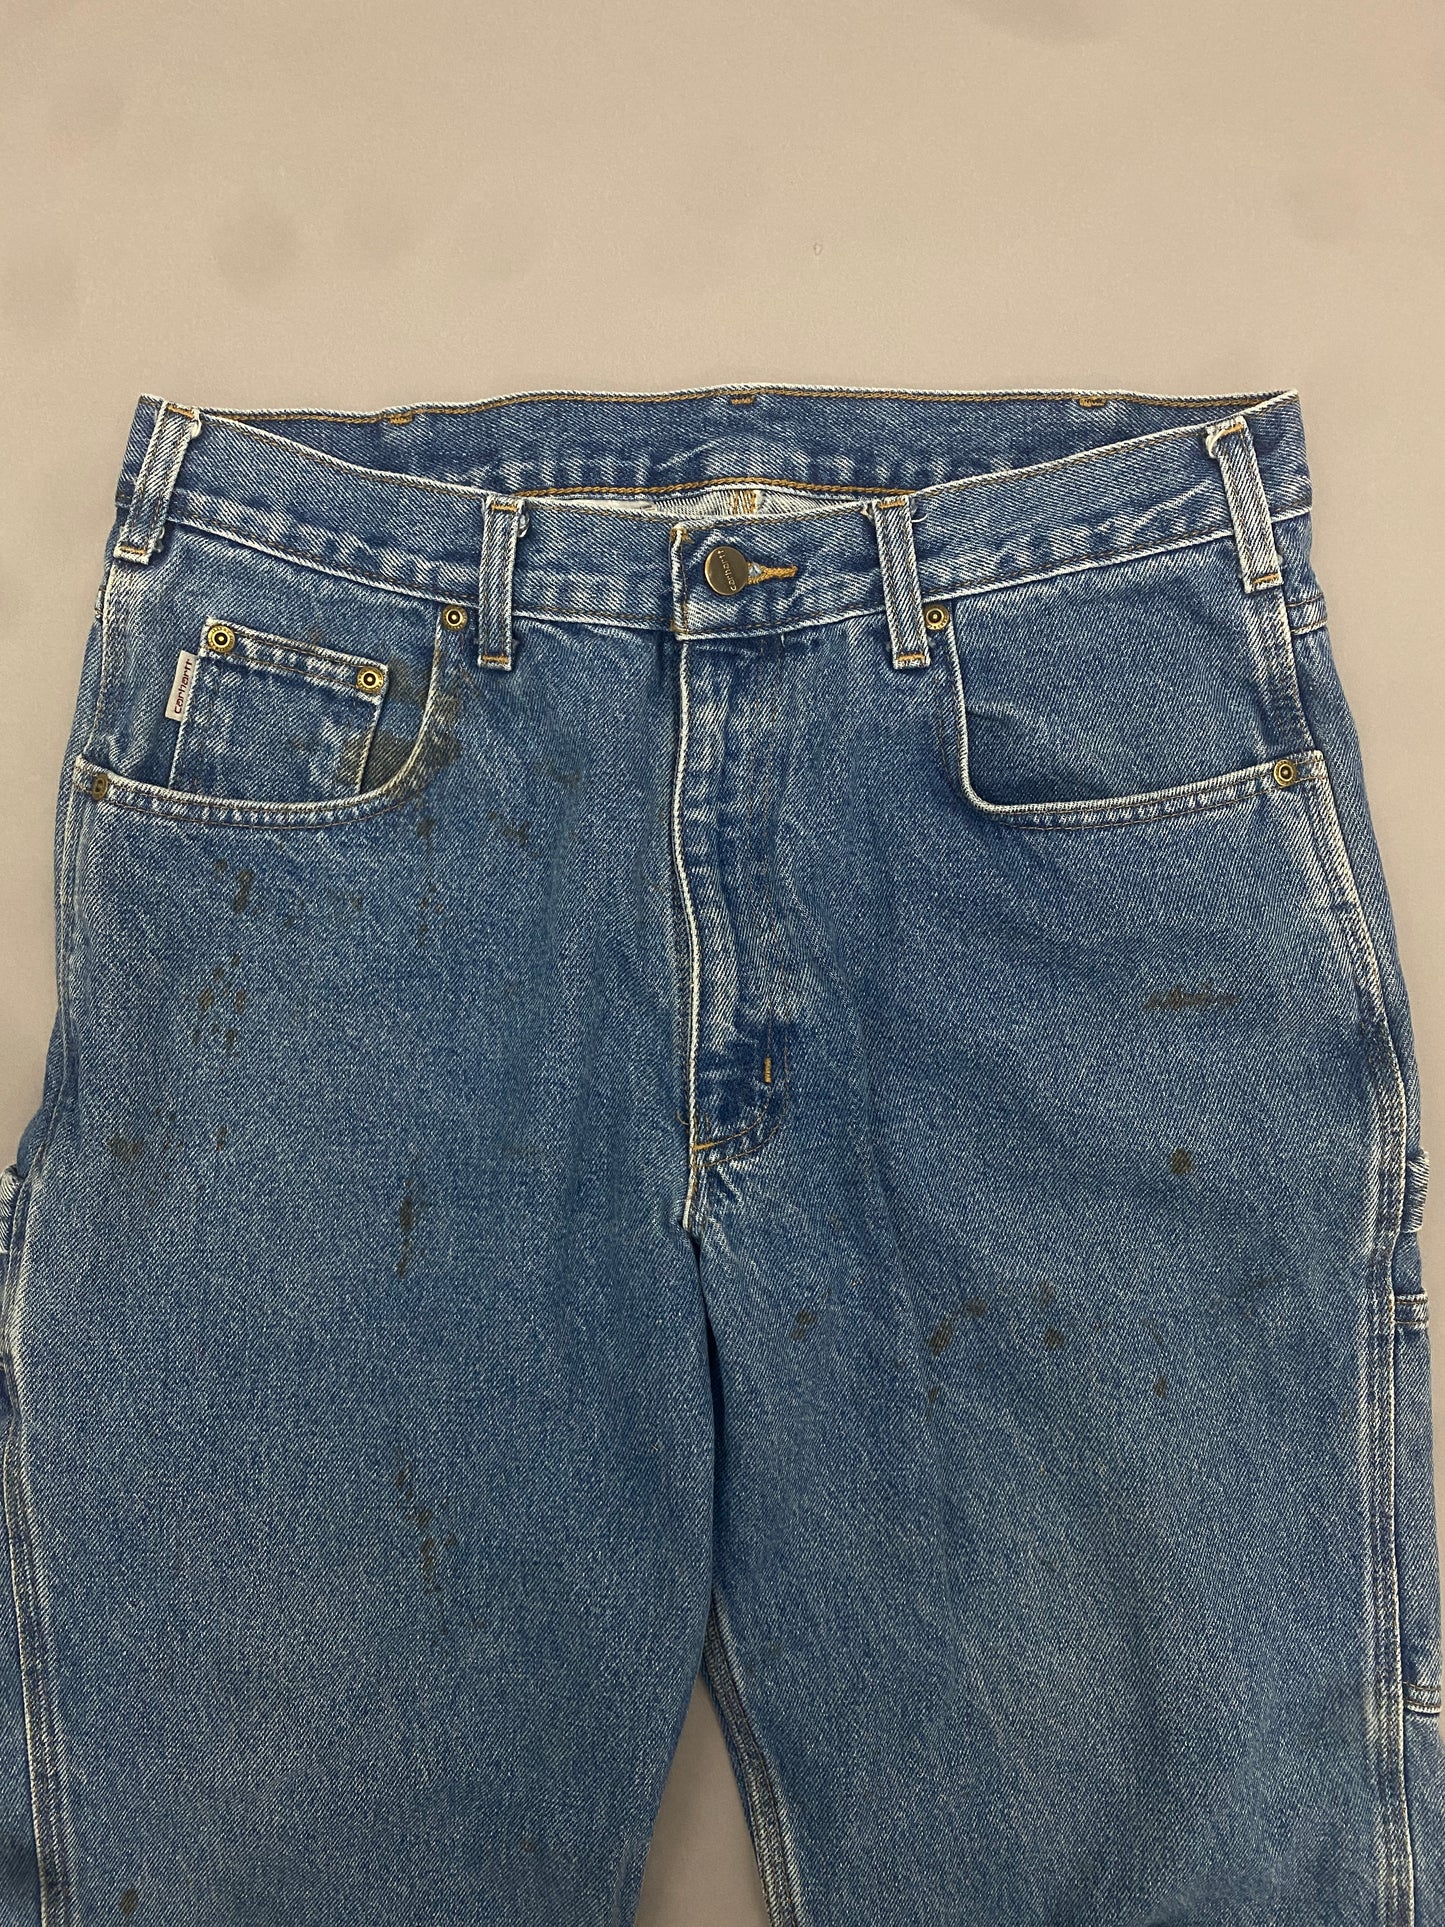 Carhartt Carpenter Jeans - 34 x 30